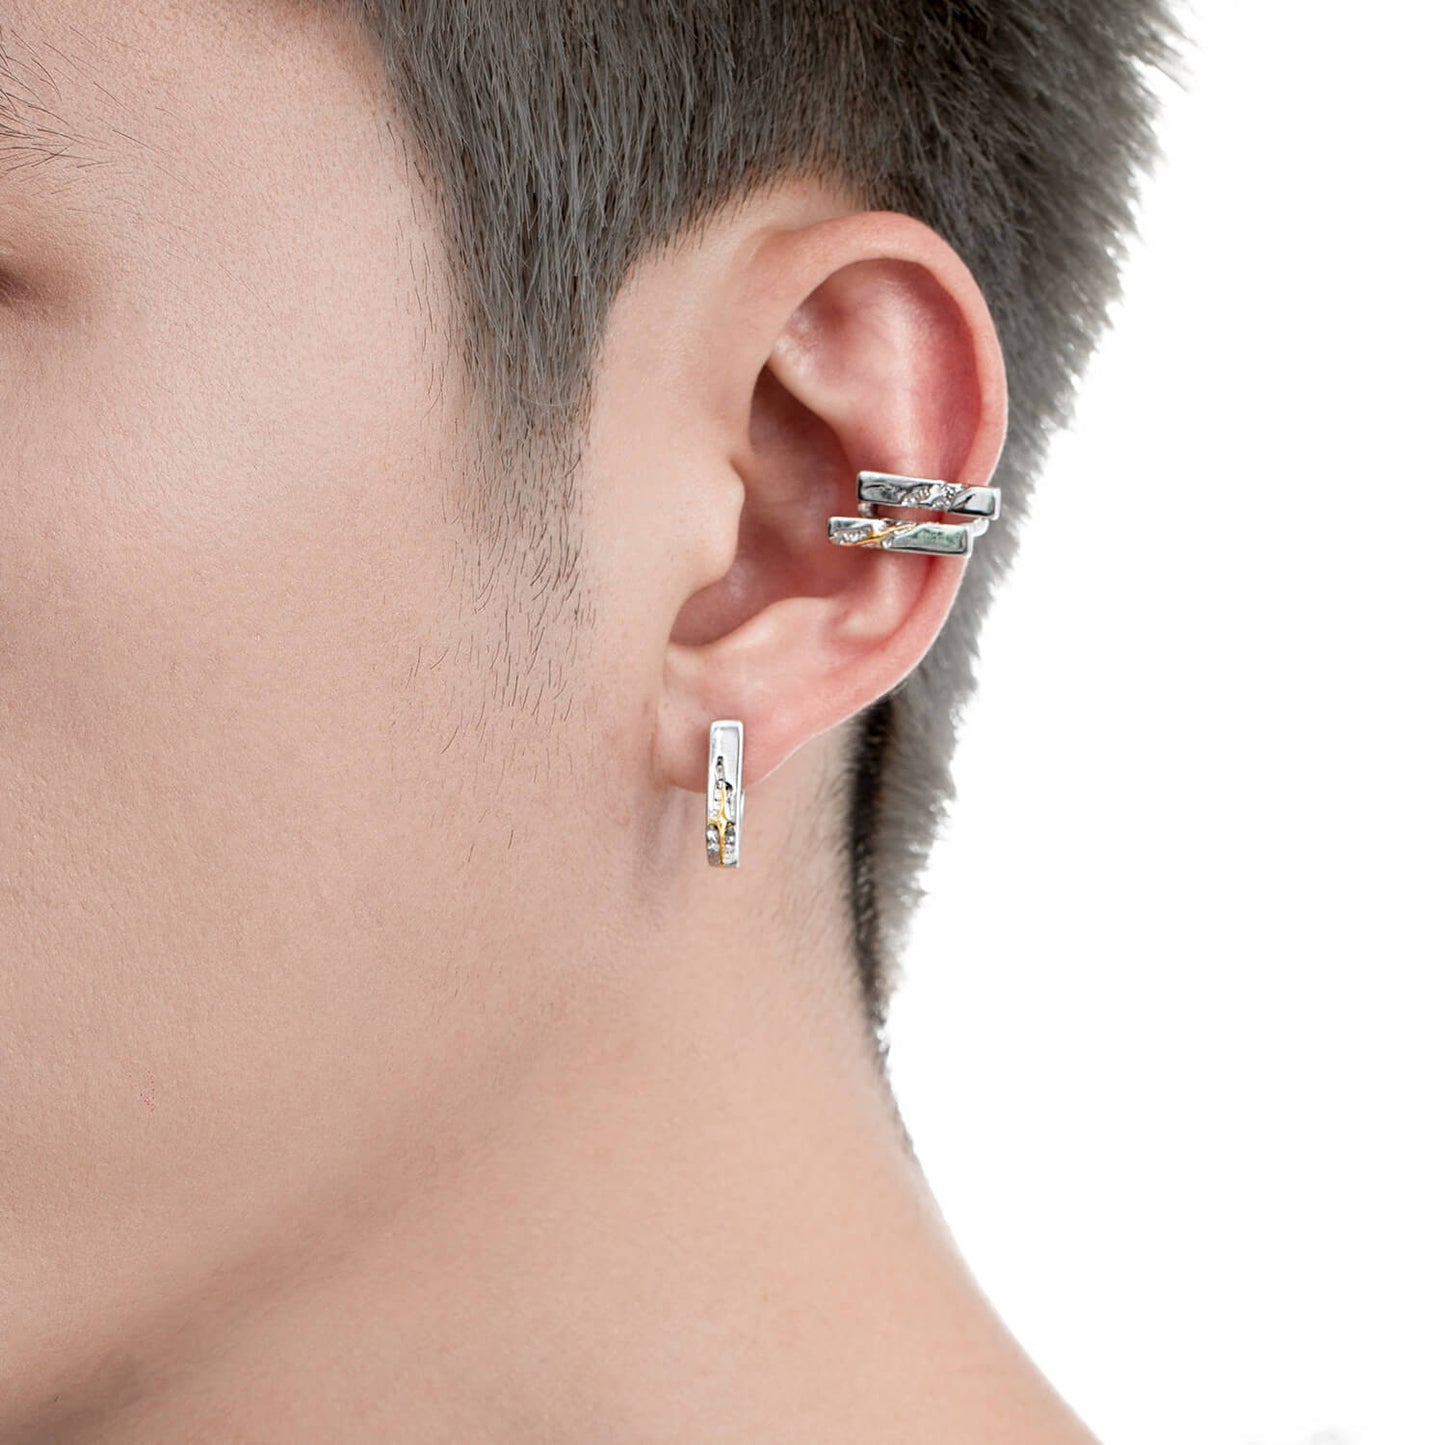 Starry Meteor Minimalist Stud Earrings  Buy at Khanie